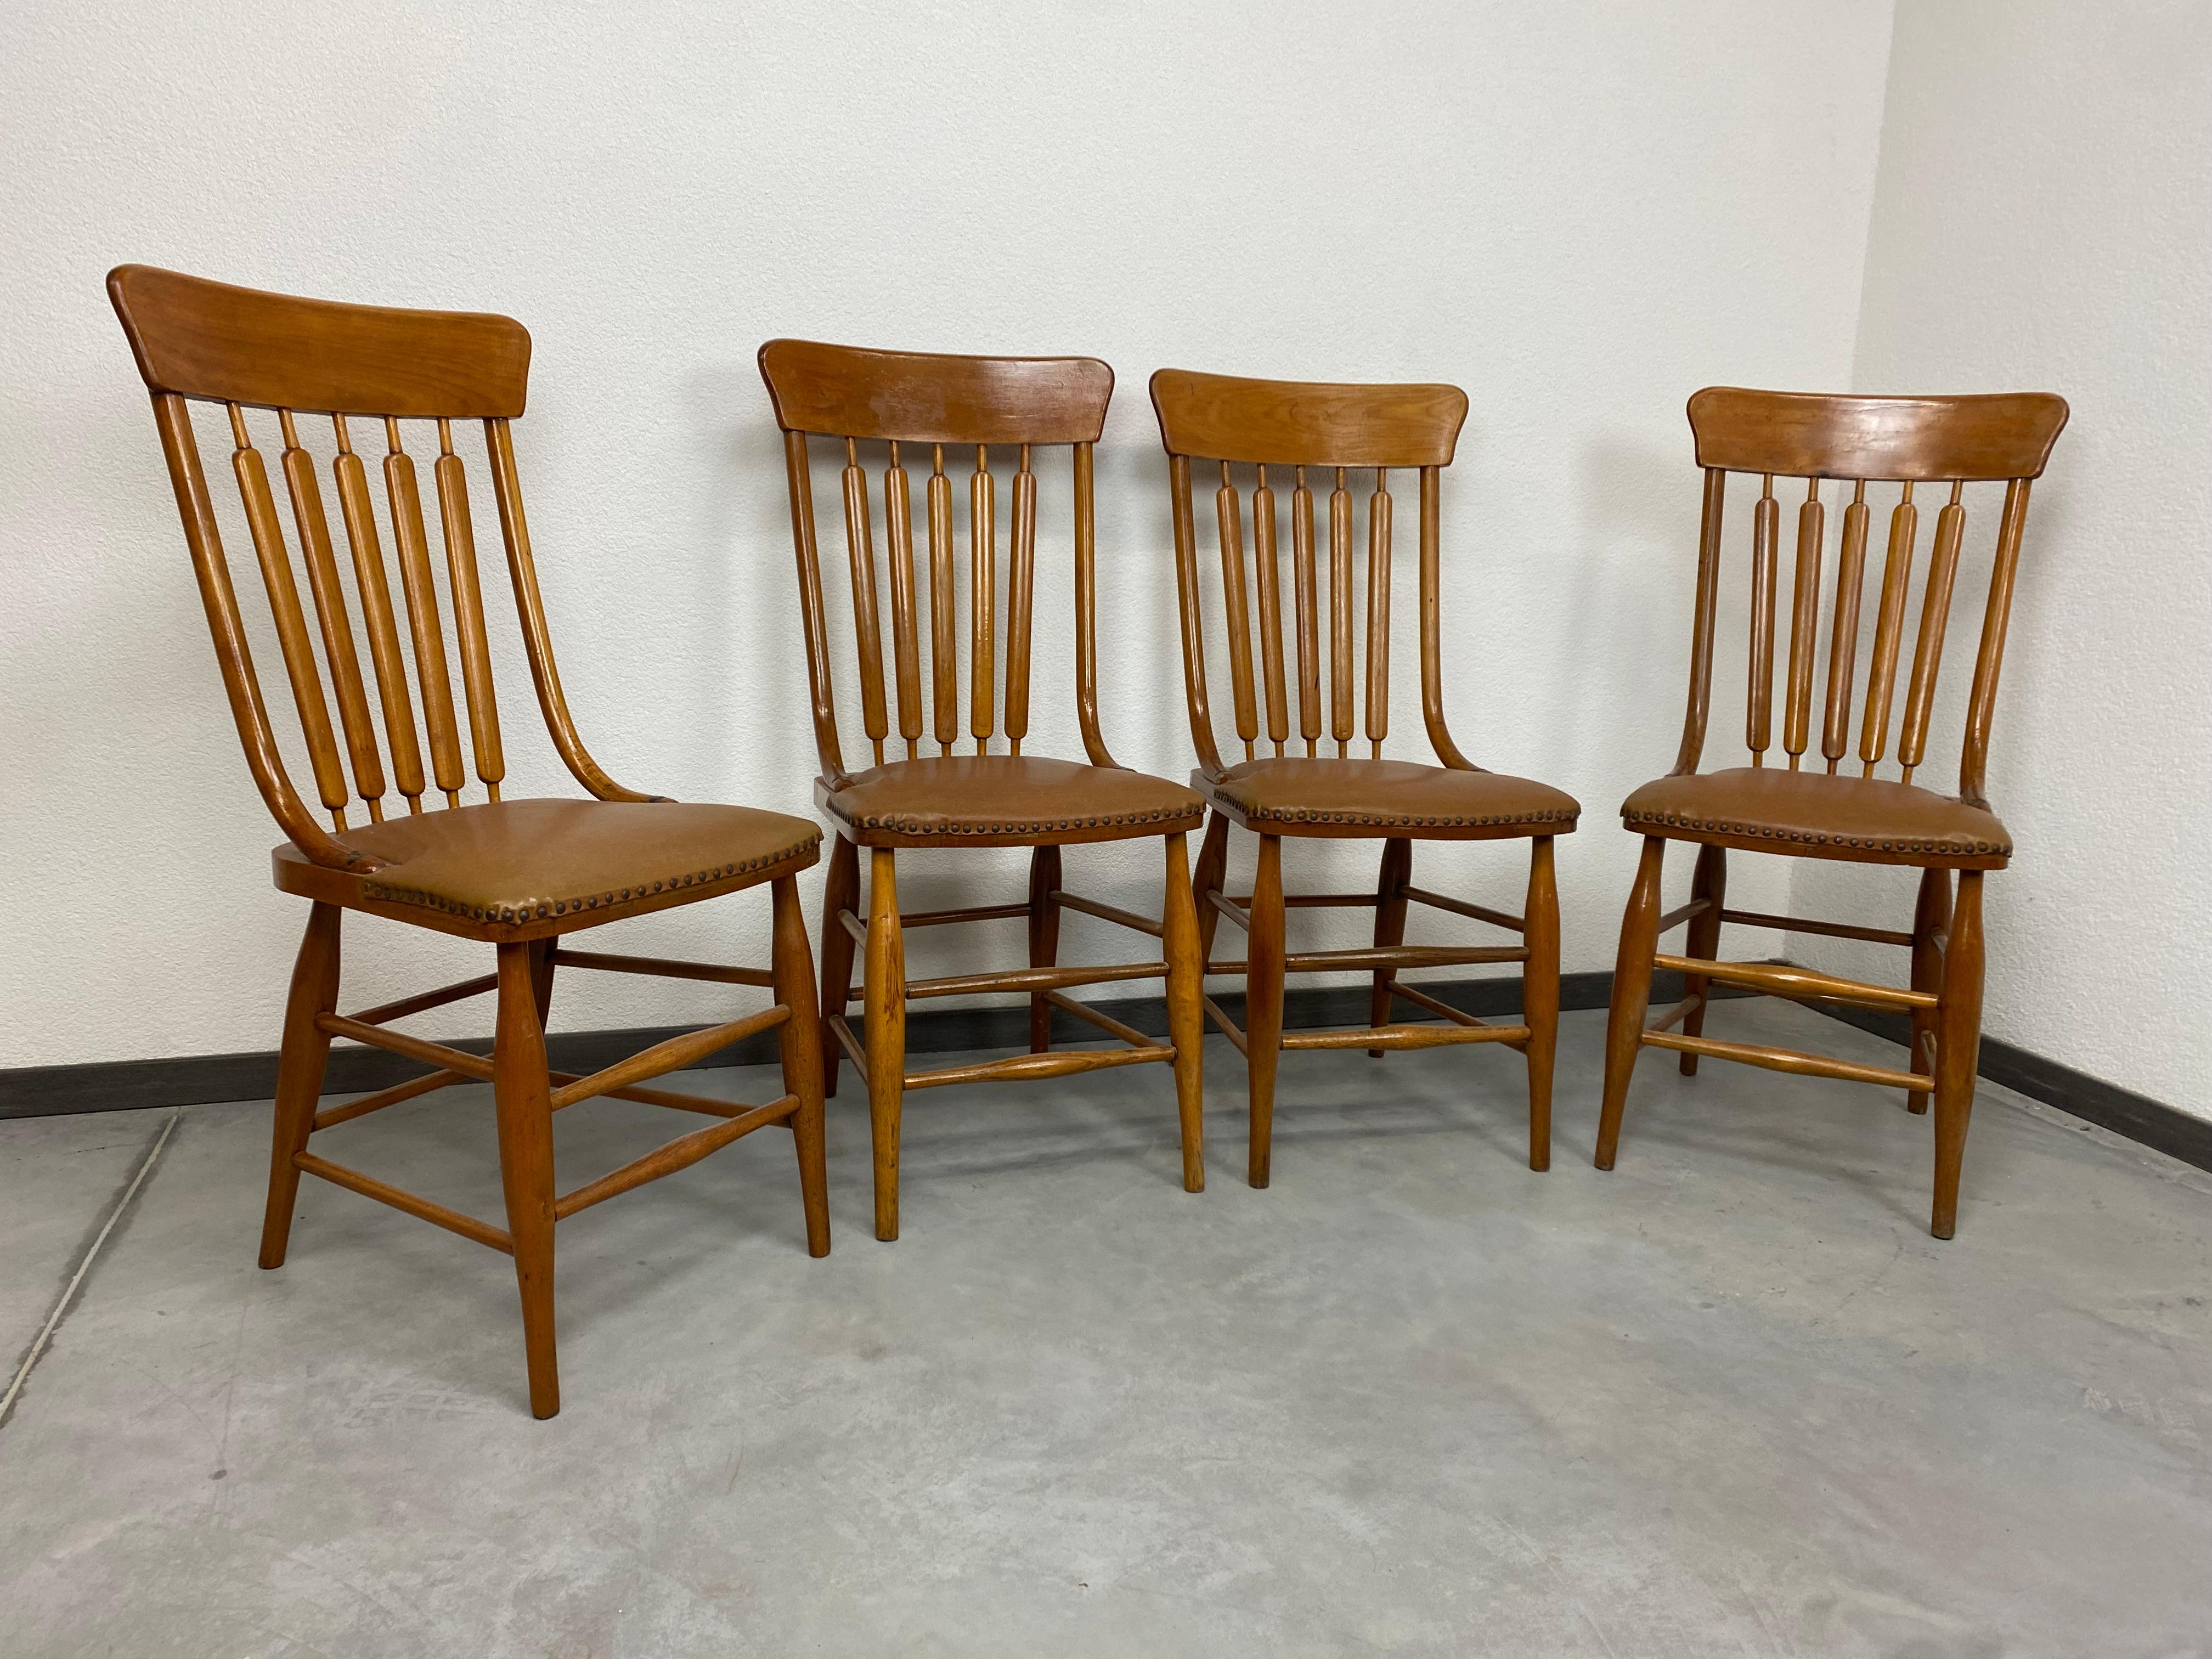 Satz von vier Esszimmerstühlen im Stil von Adolf Loos mit braunen Ledersitzen in originalem Vintage-Zustand.